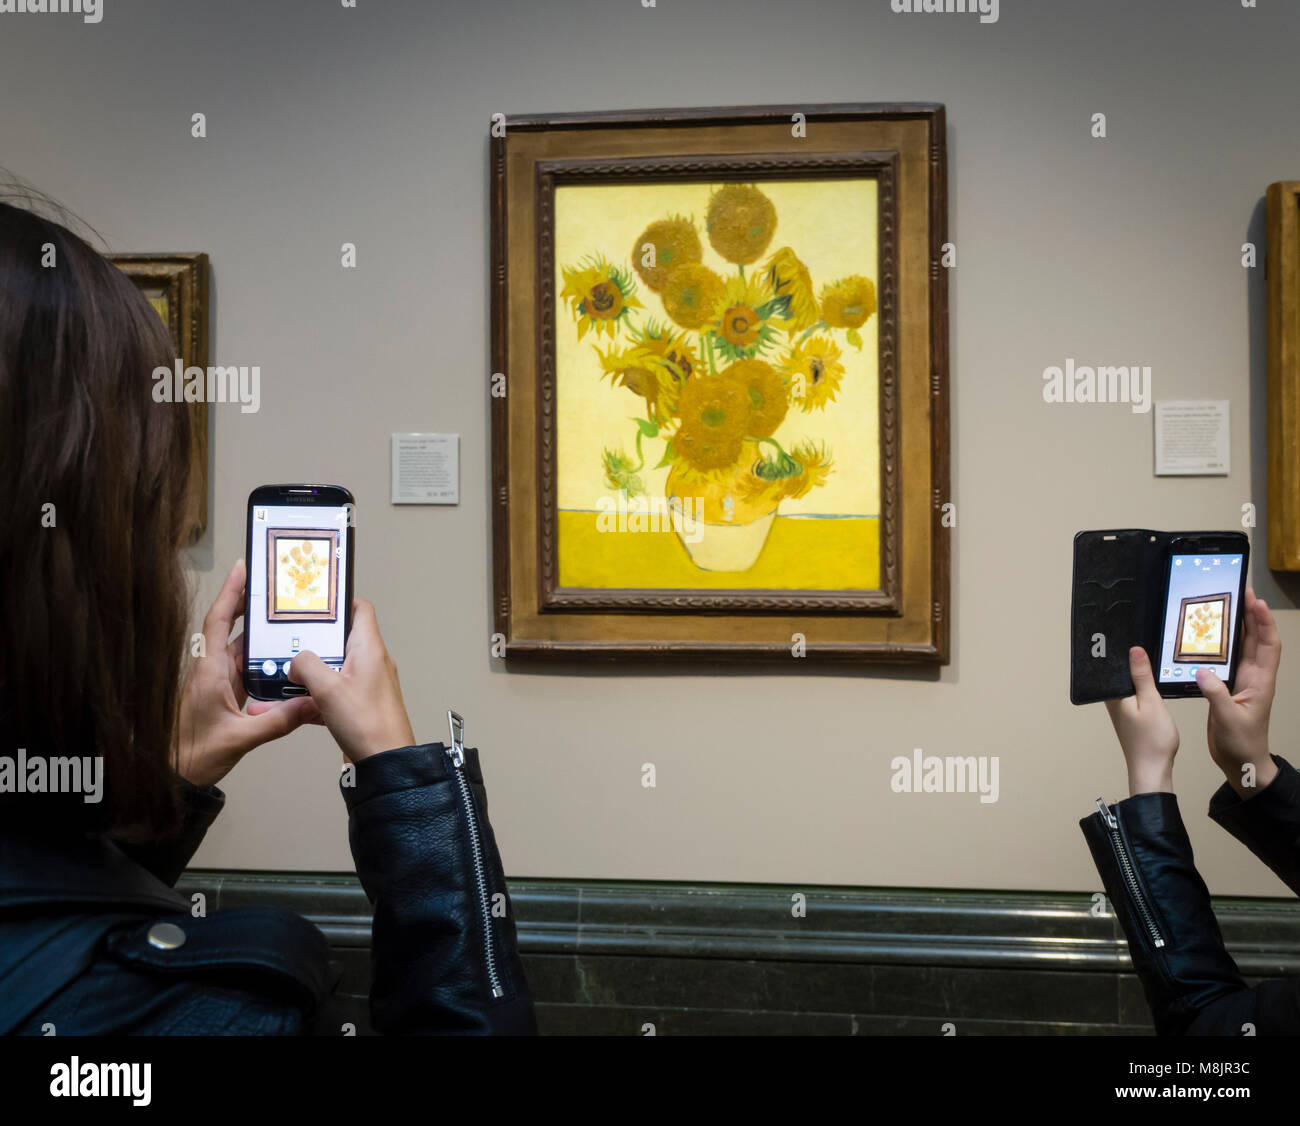 Londres, UK - 1 Sep 2017 : les visiteurs de la National Gallery de Londres sont à l'aide de leur smartphone pour prendre des photos de Vincent van Gogh peinture à l'huile "unflowers', l'une des plus célèbres pièces du musée. Banque D'Images